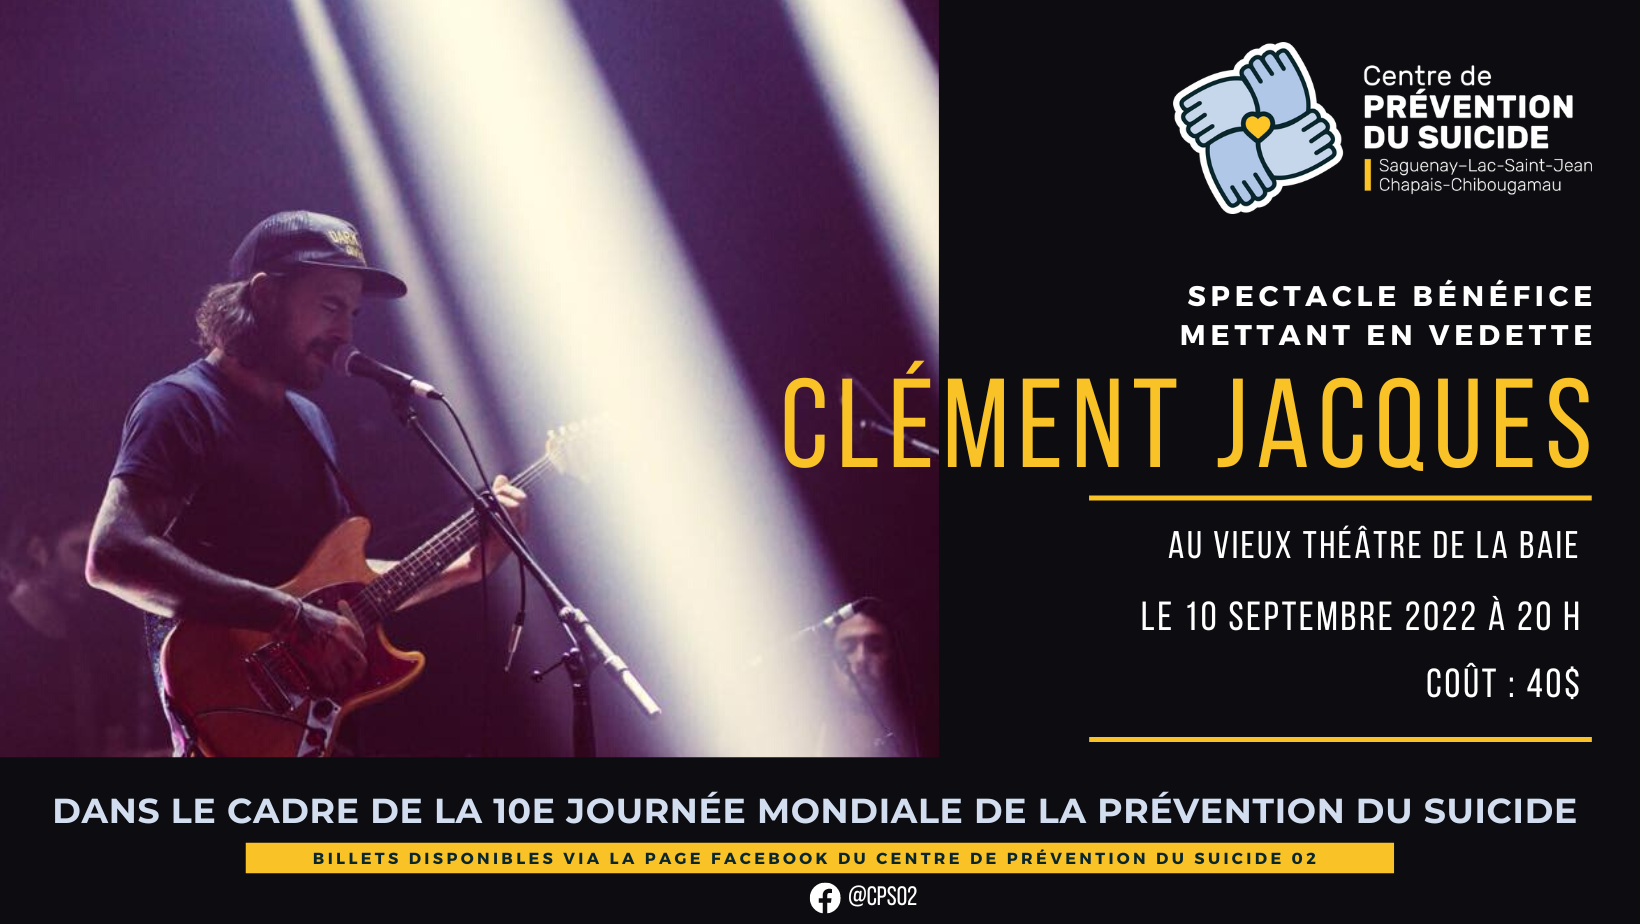 Spectacle bénéfice - Clément Jacques - Centre de prévention du suicide 02